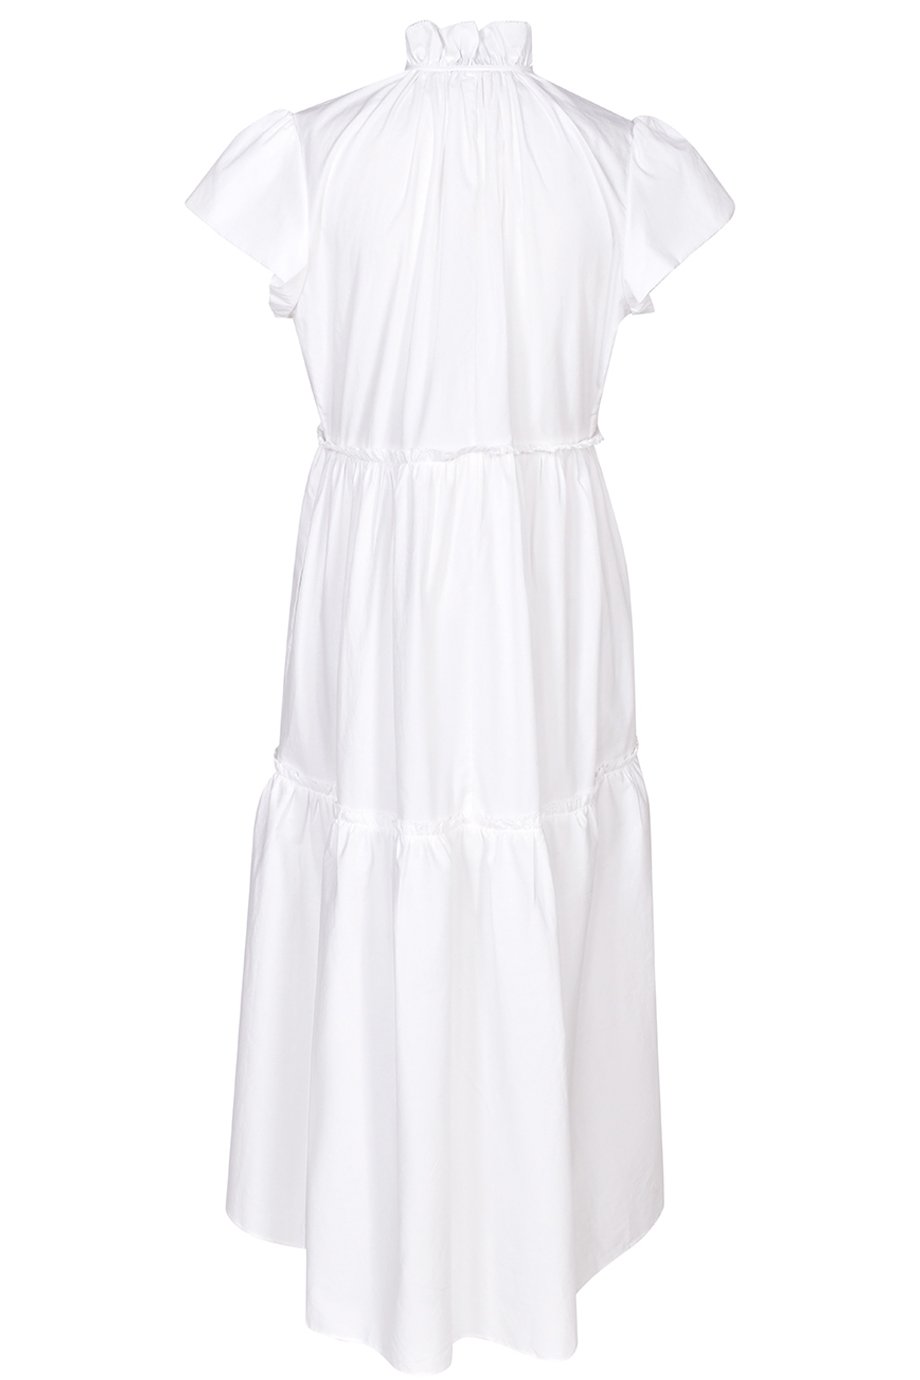 Husk Tahiti Dress - White